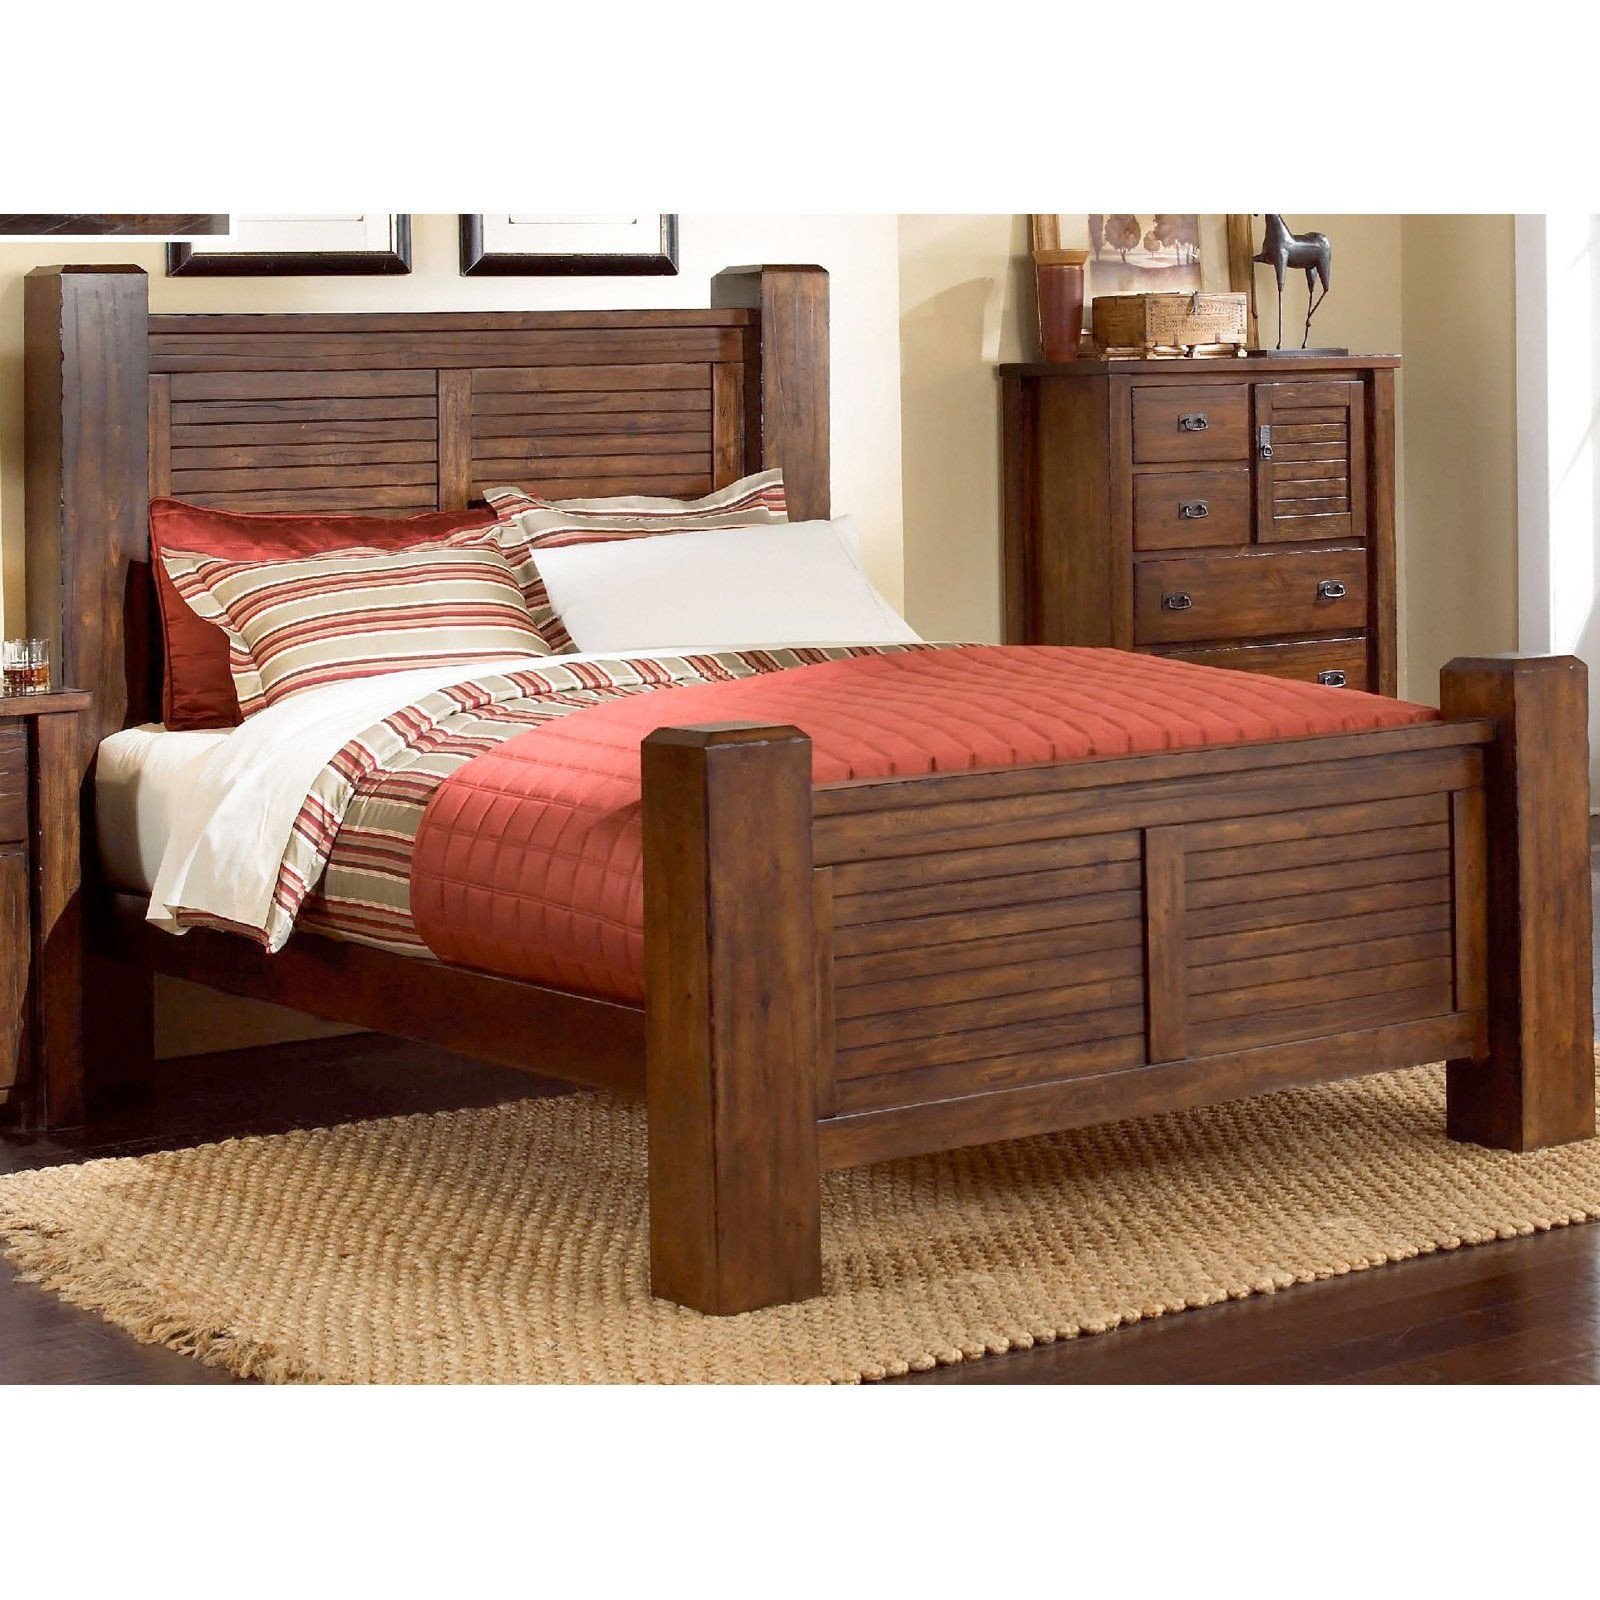 Log King Size Bedroom Set New Progressive Furniture Trestlewood Post Plete Bed P611